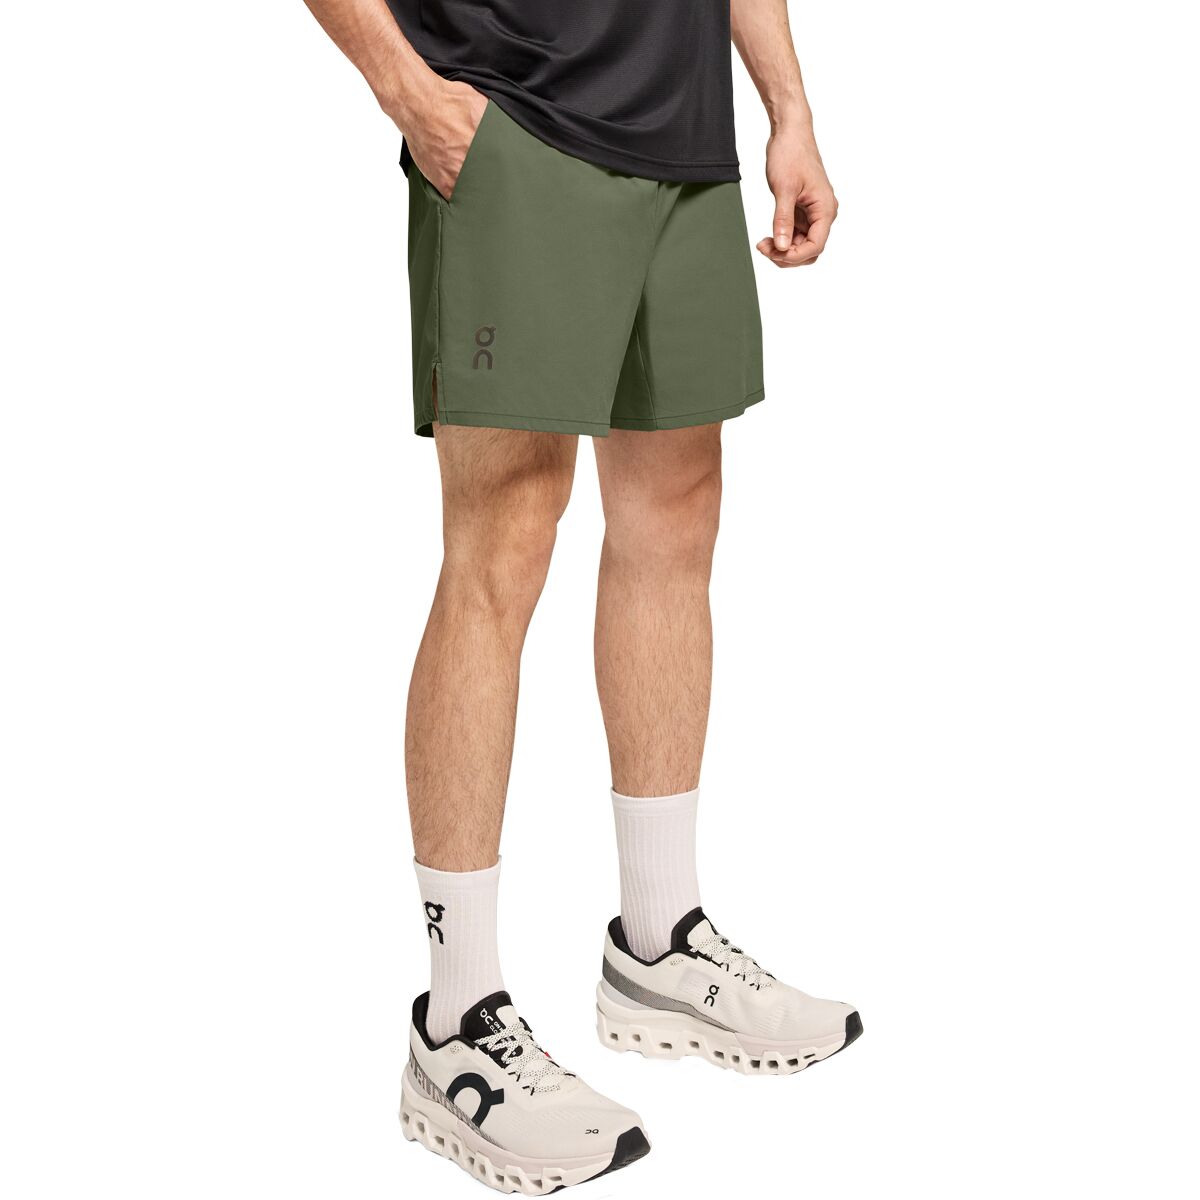 Essential Shorts - Men